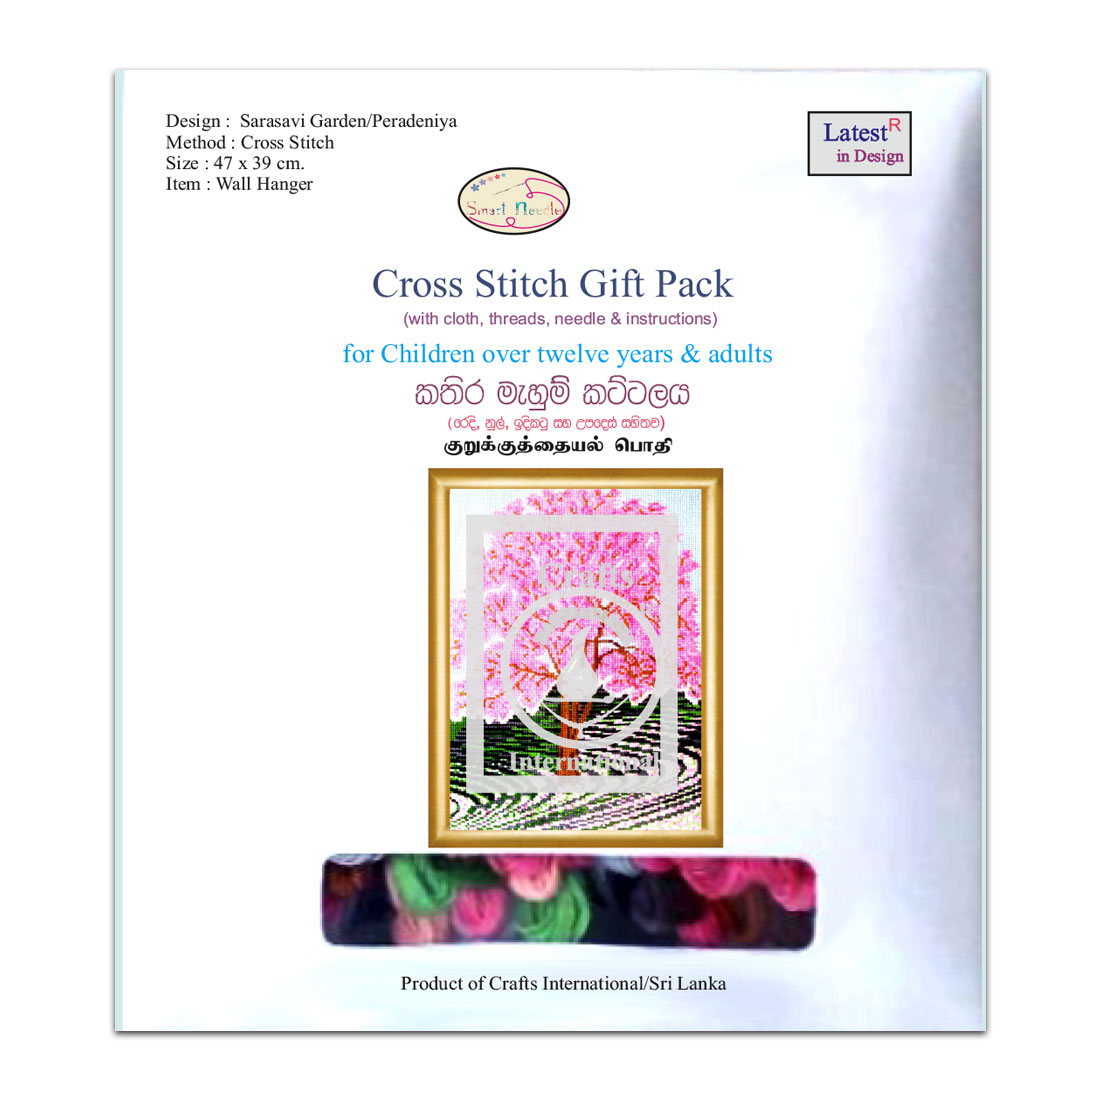 Cross Stitch Gift Pack - Sarasavi Garden/Peradeniya